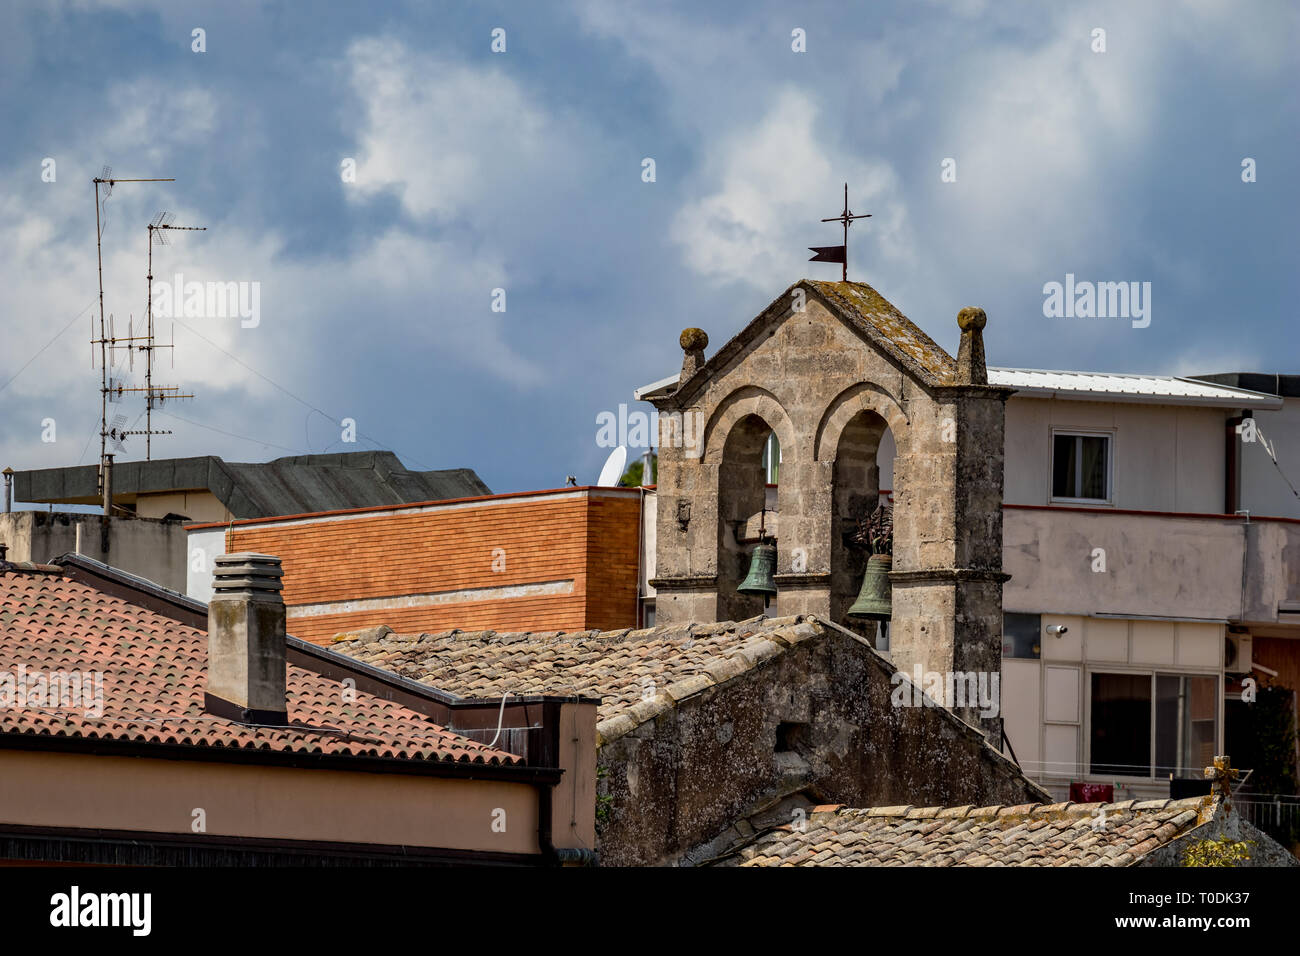 Campanile di una chiesa con due campane in ottone e tetto a croce religiosa, Street View di antica città di Matera, Basilicata, Italia meridionale, nuvoloso estate calda Foto Stock